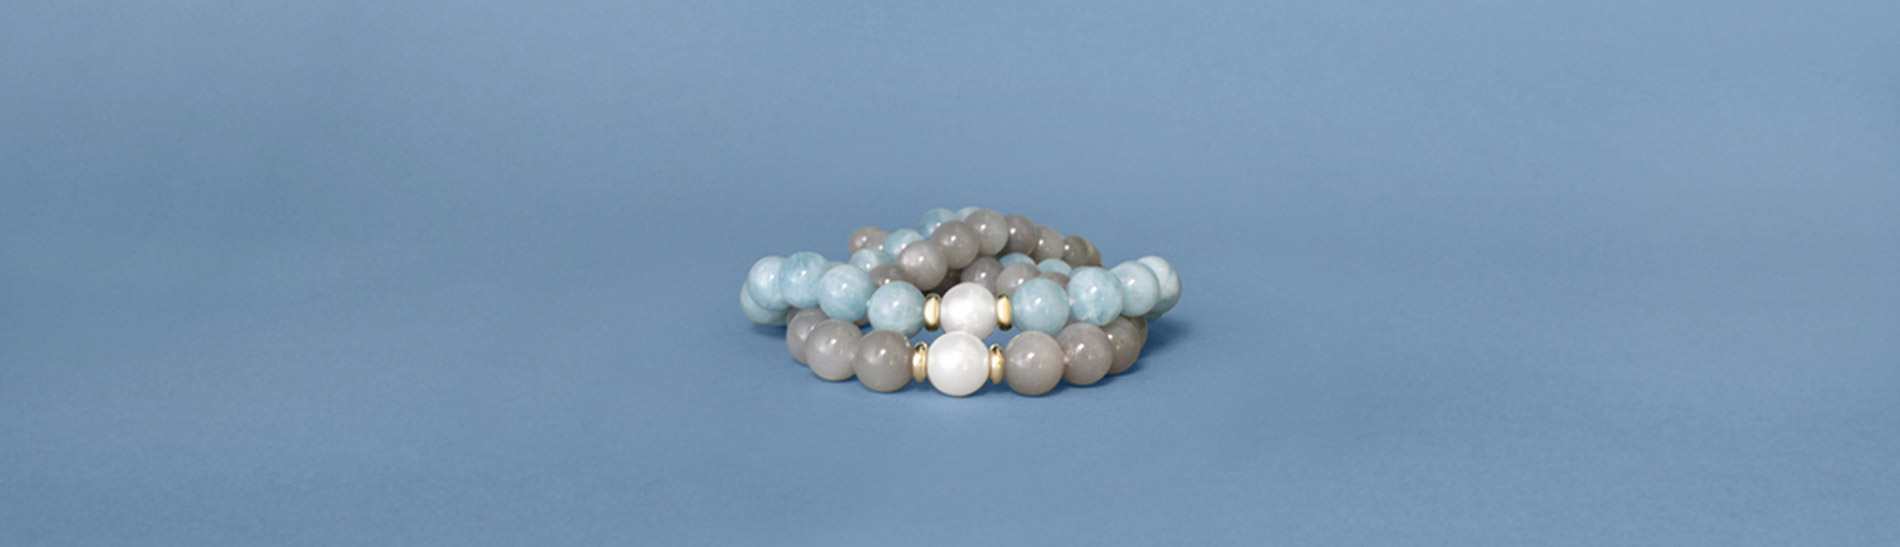 Onlineshop für Perlen- und Edelsteinschmuck